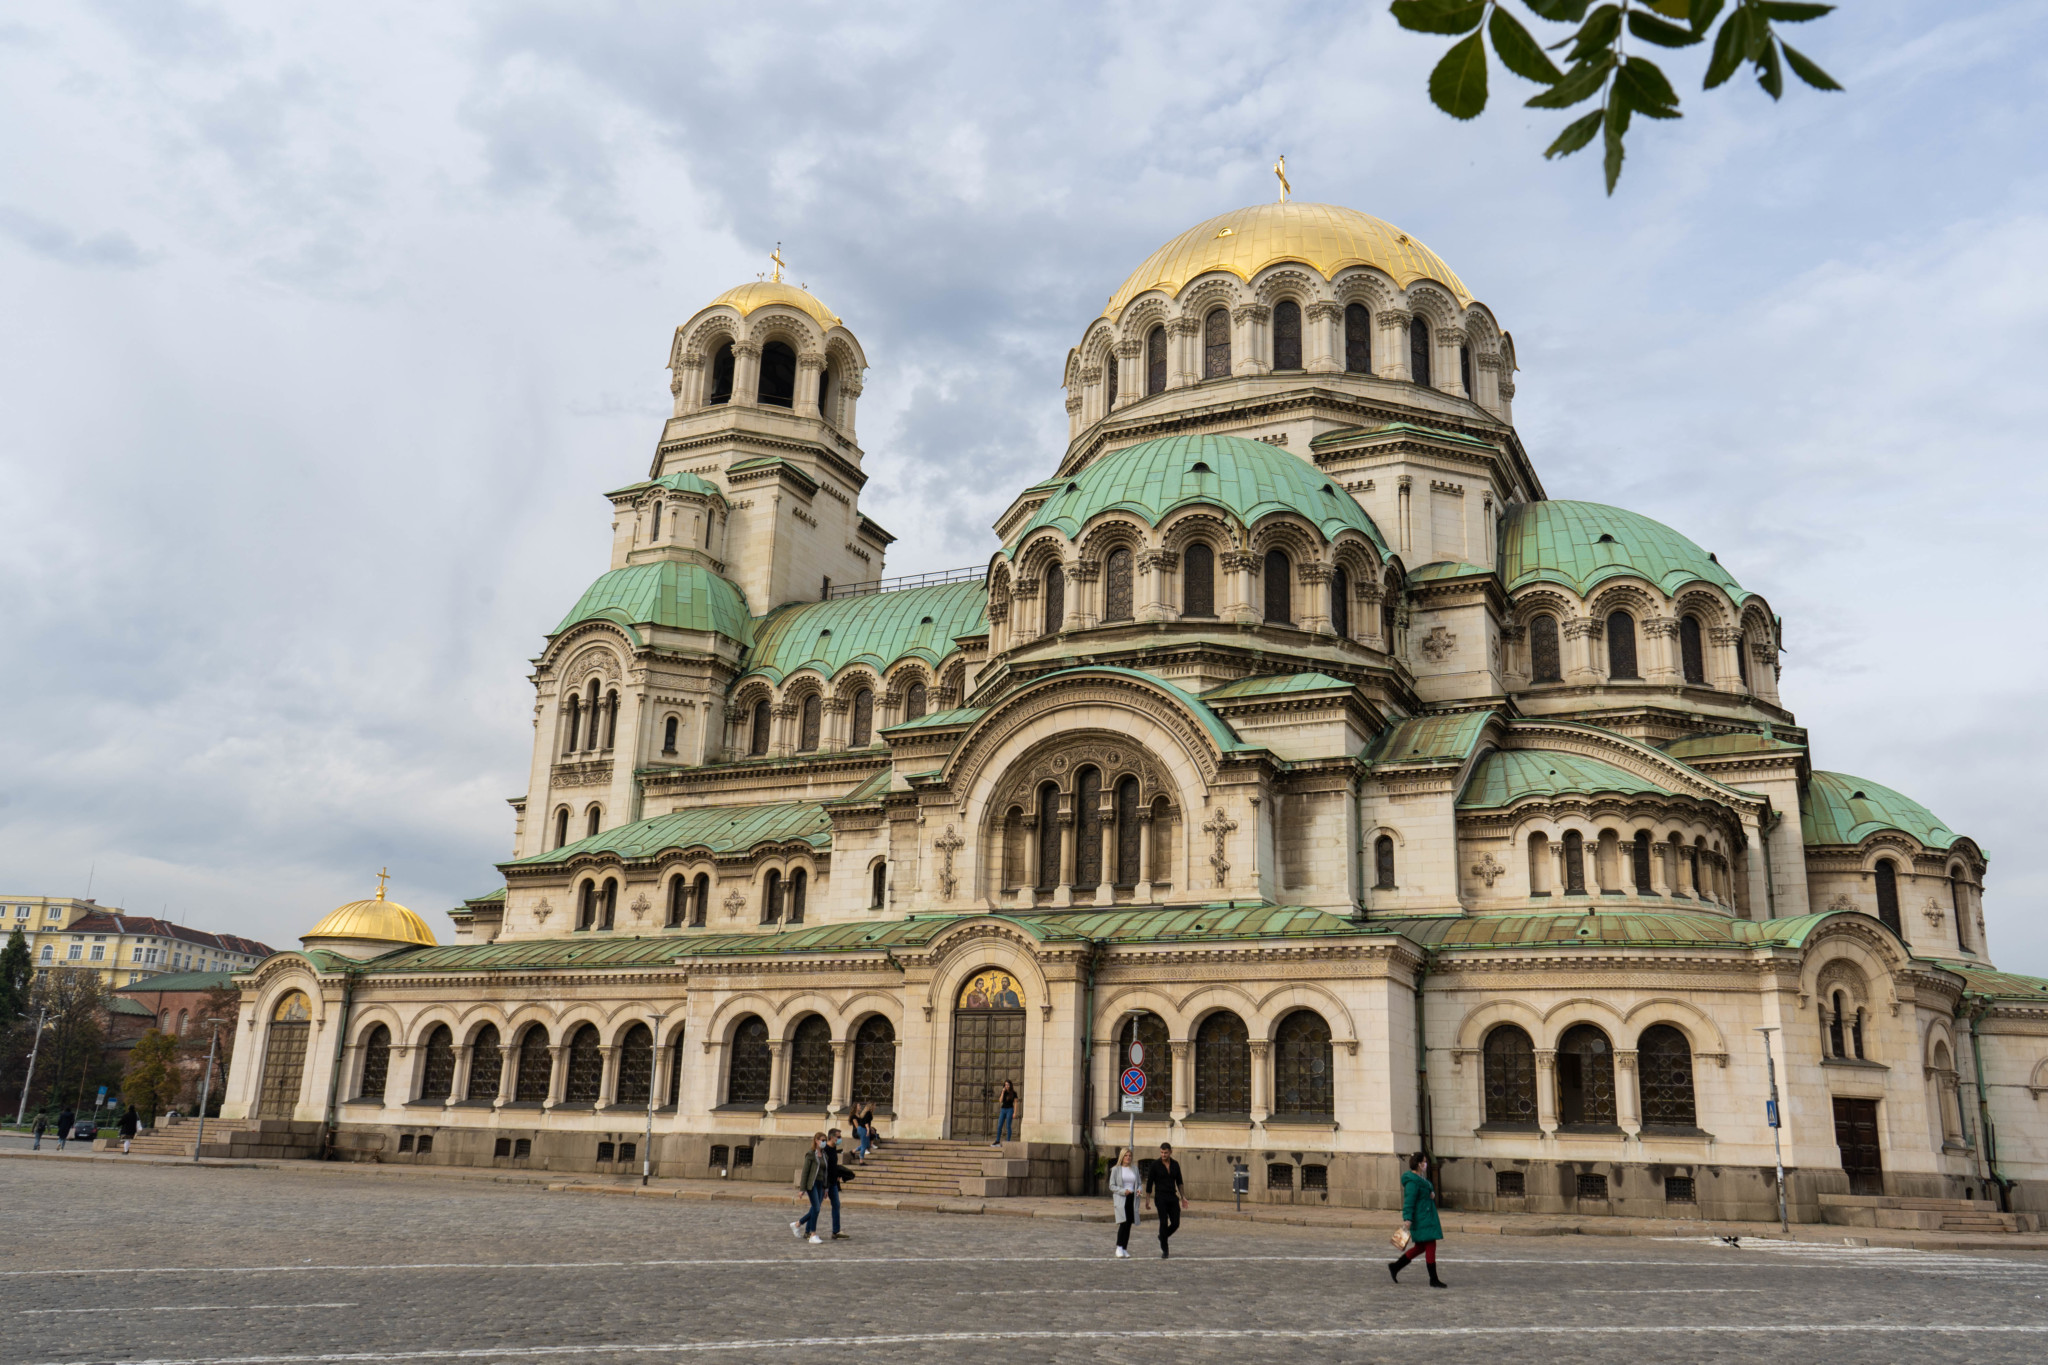 Reiseziele im April: Auch Bulgarien ist eine schöne Idee